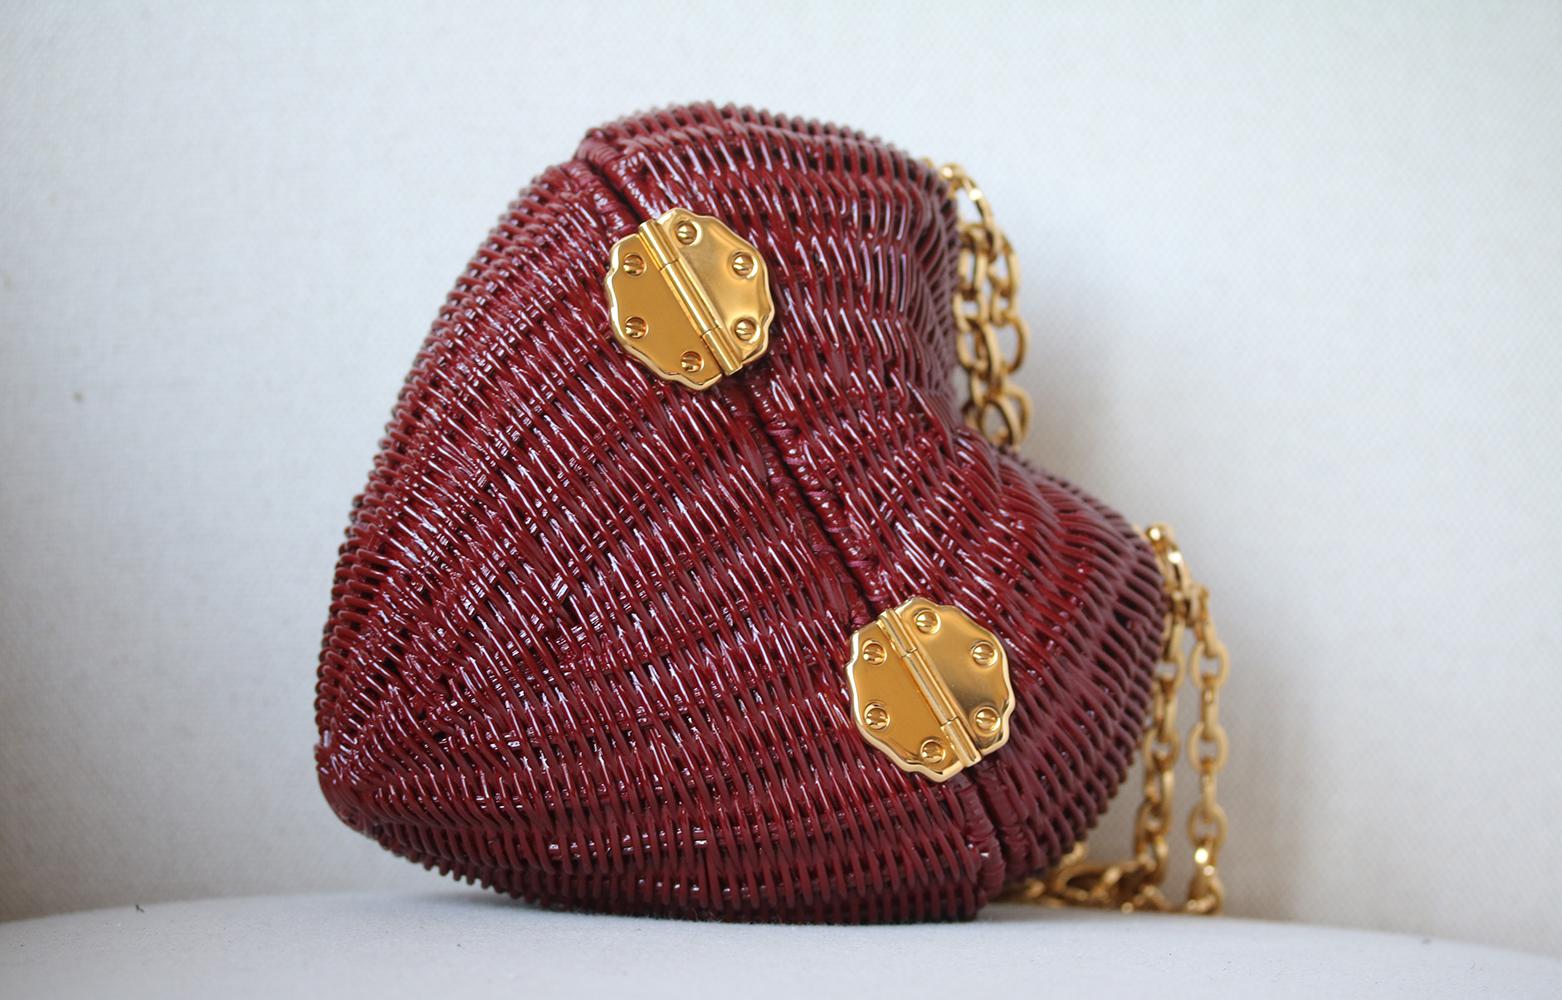 Women's Dolce & Gabbana Dolce Heart Box Bag in Painted Wicker